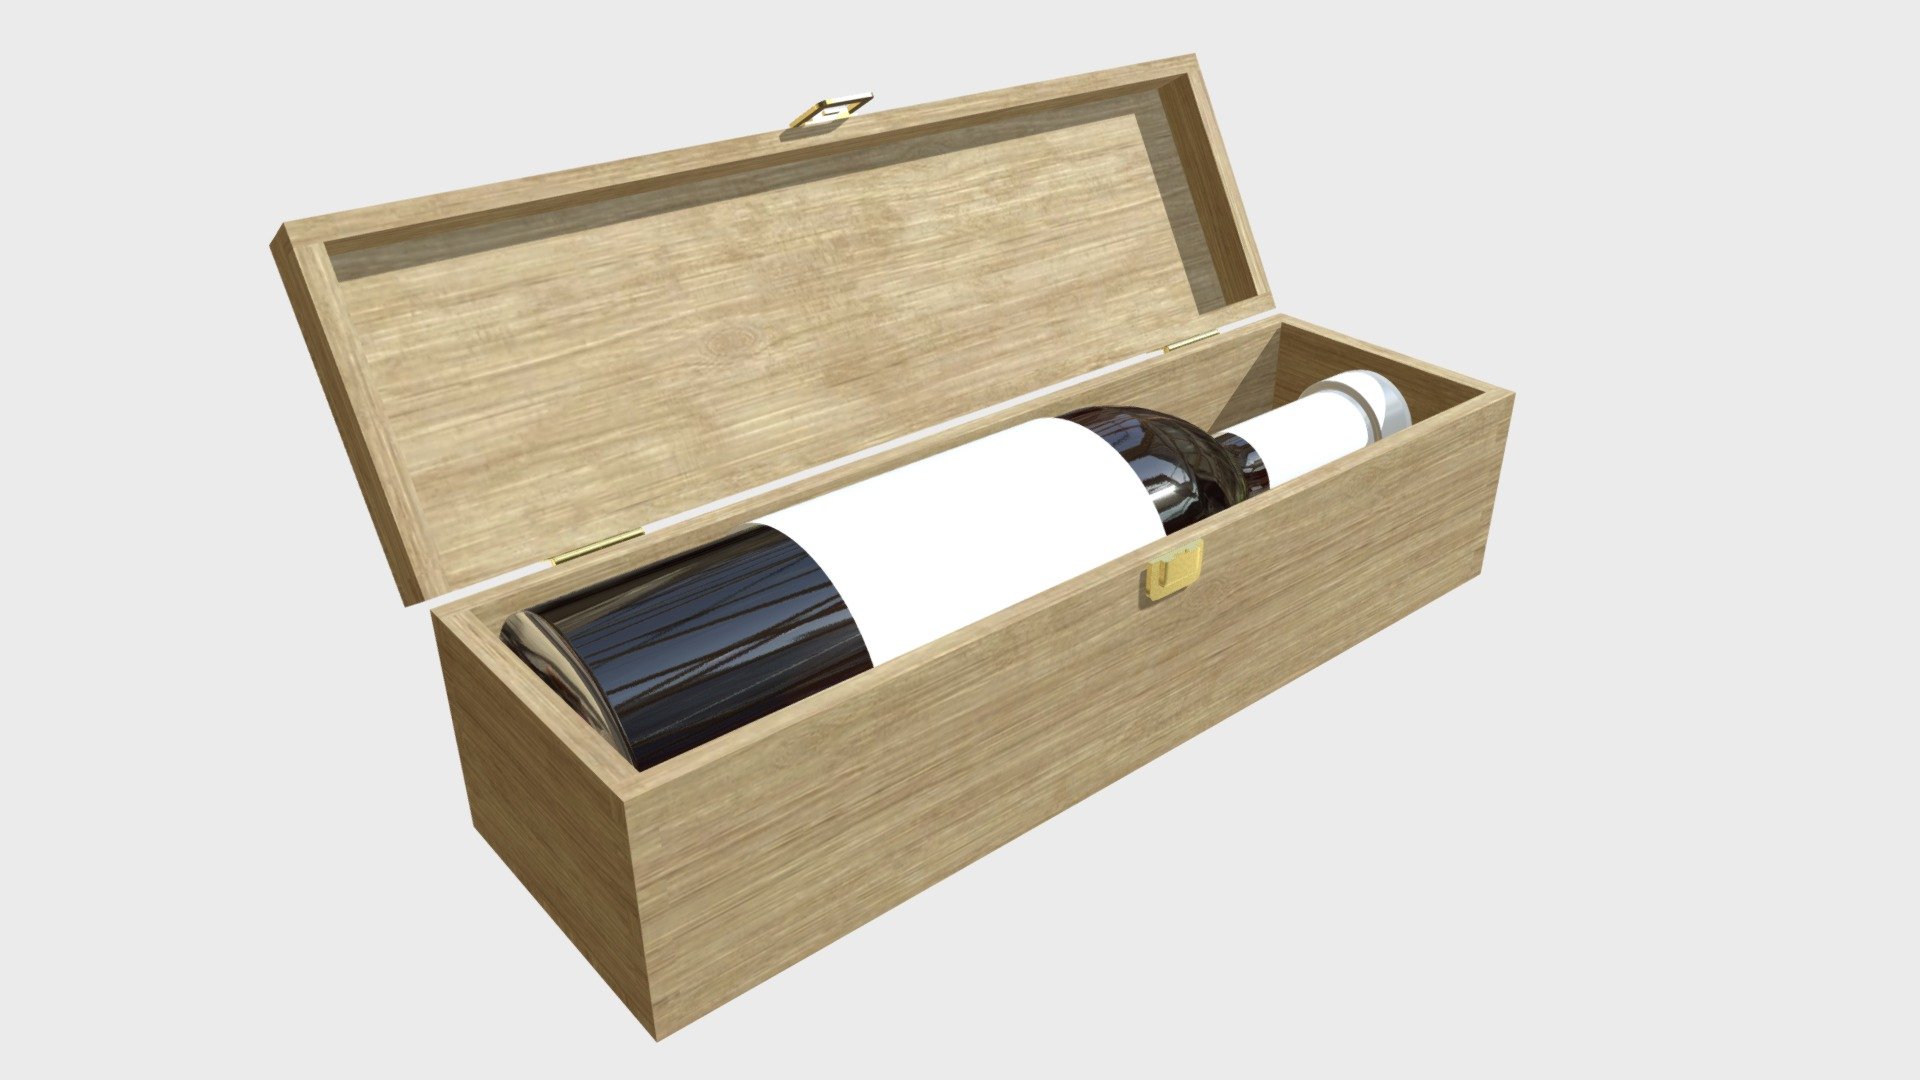 Wine bottle in a wooden box